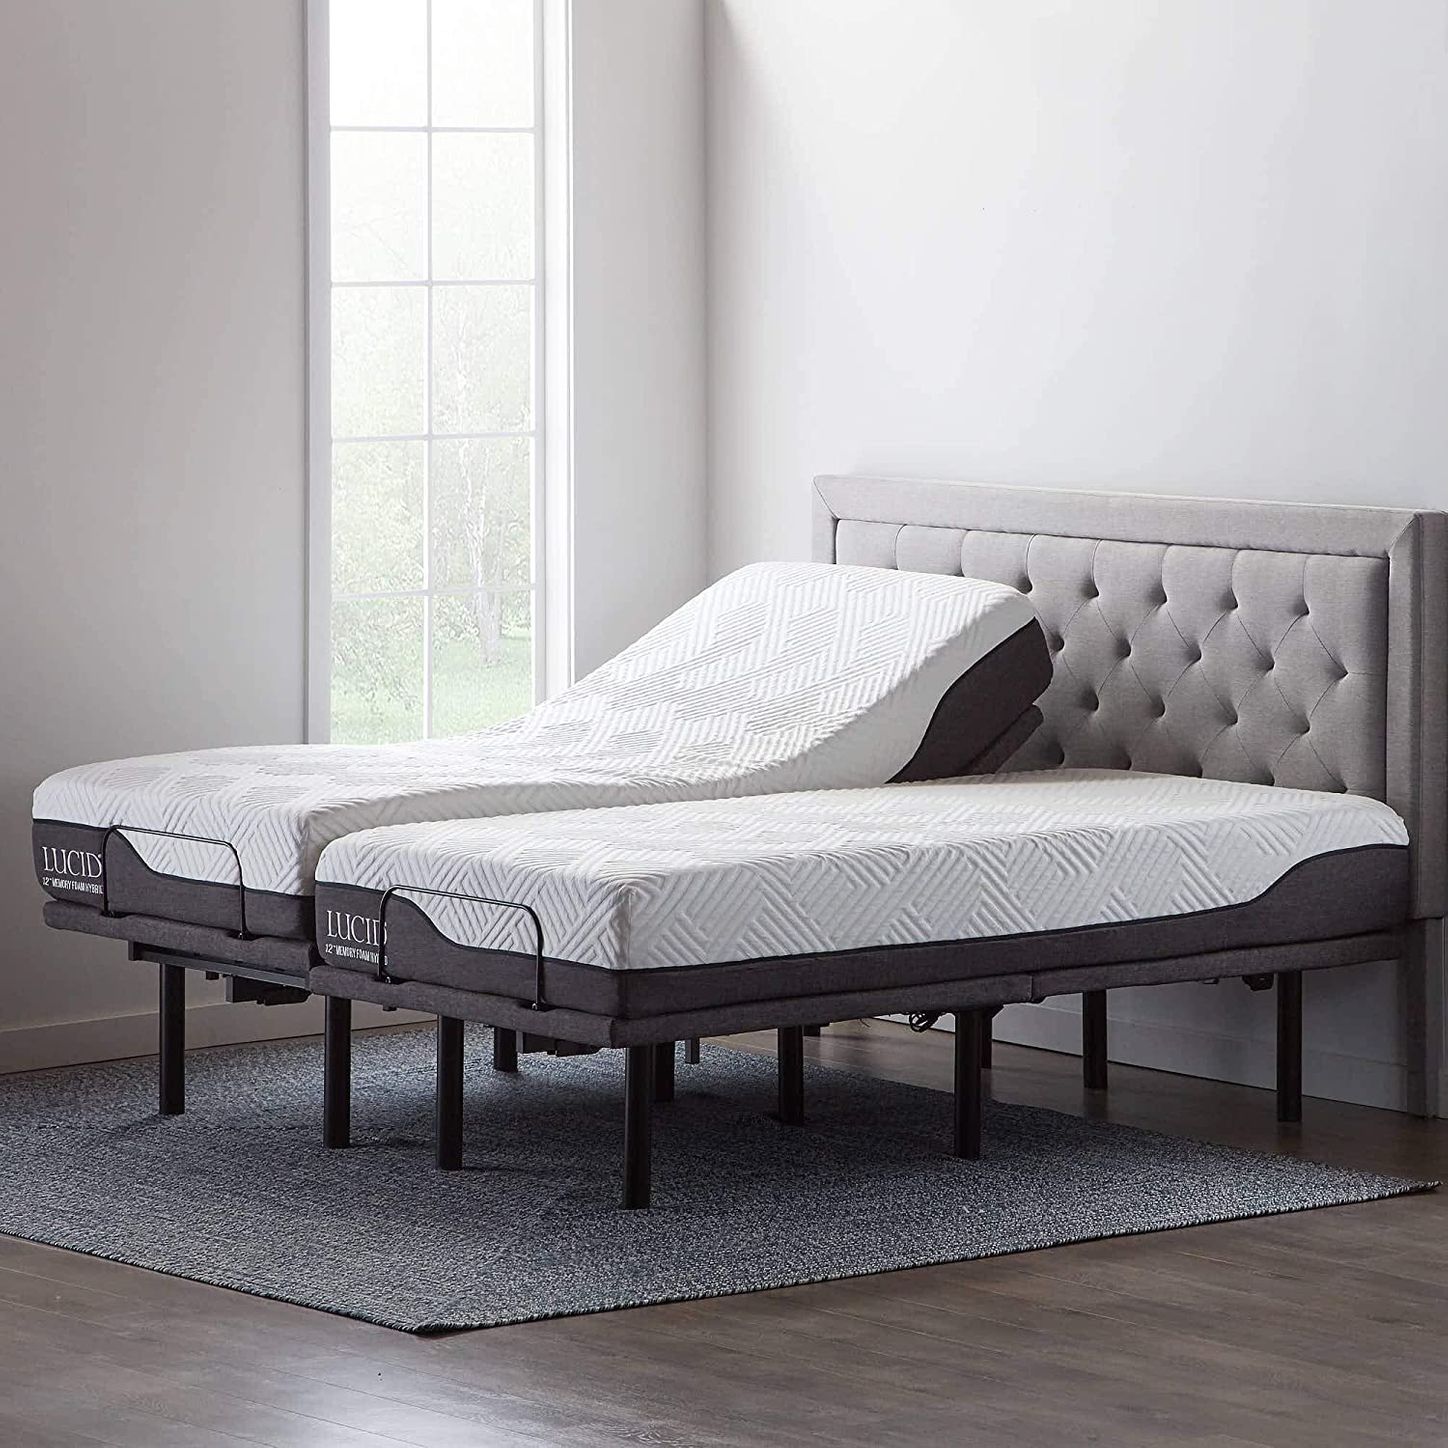 10 Best Adjustable Bed Bases 2021 The, Mattress King Adjustable Beds